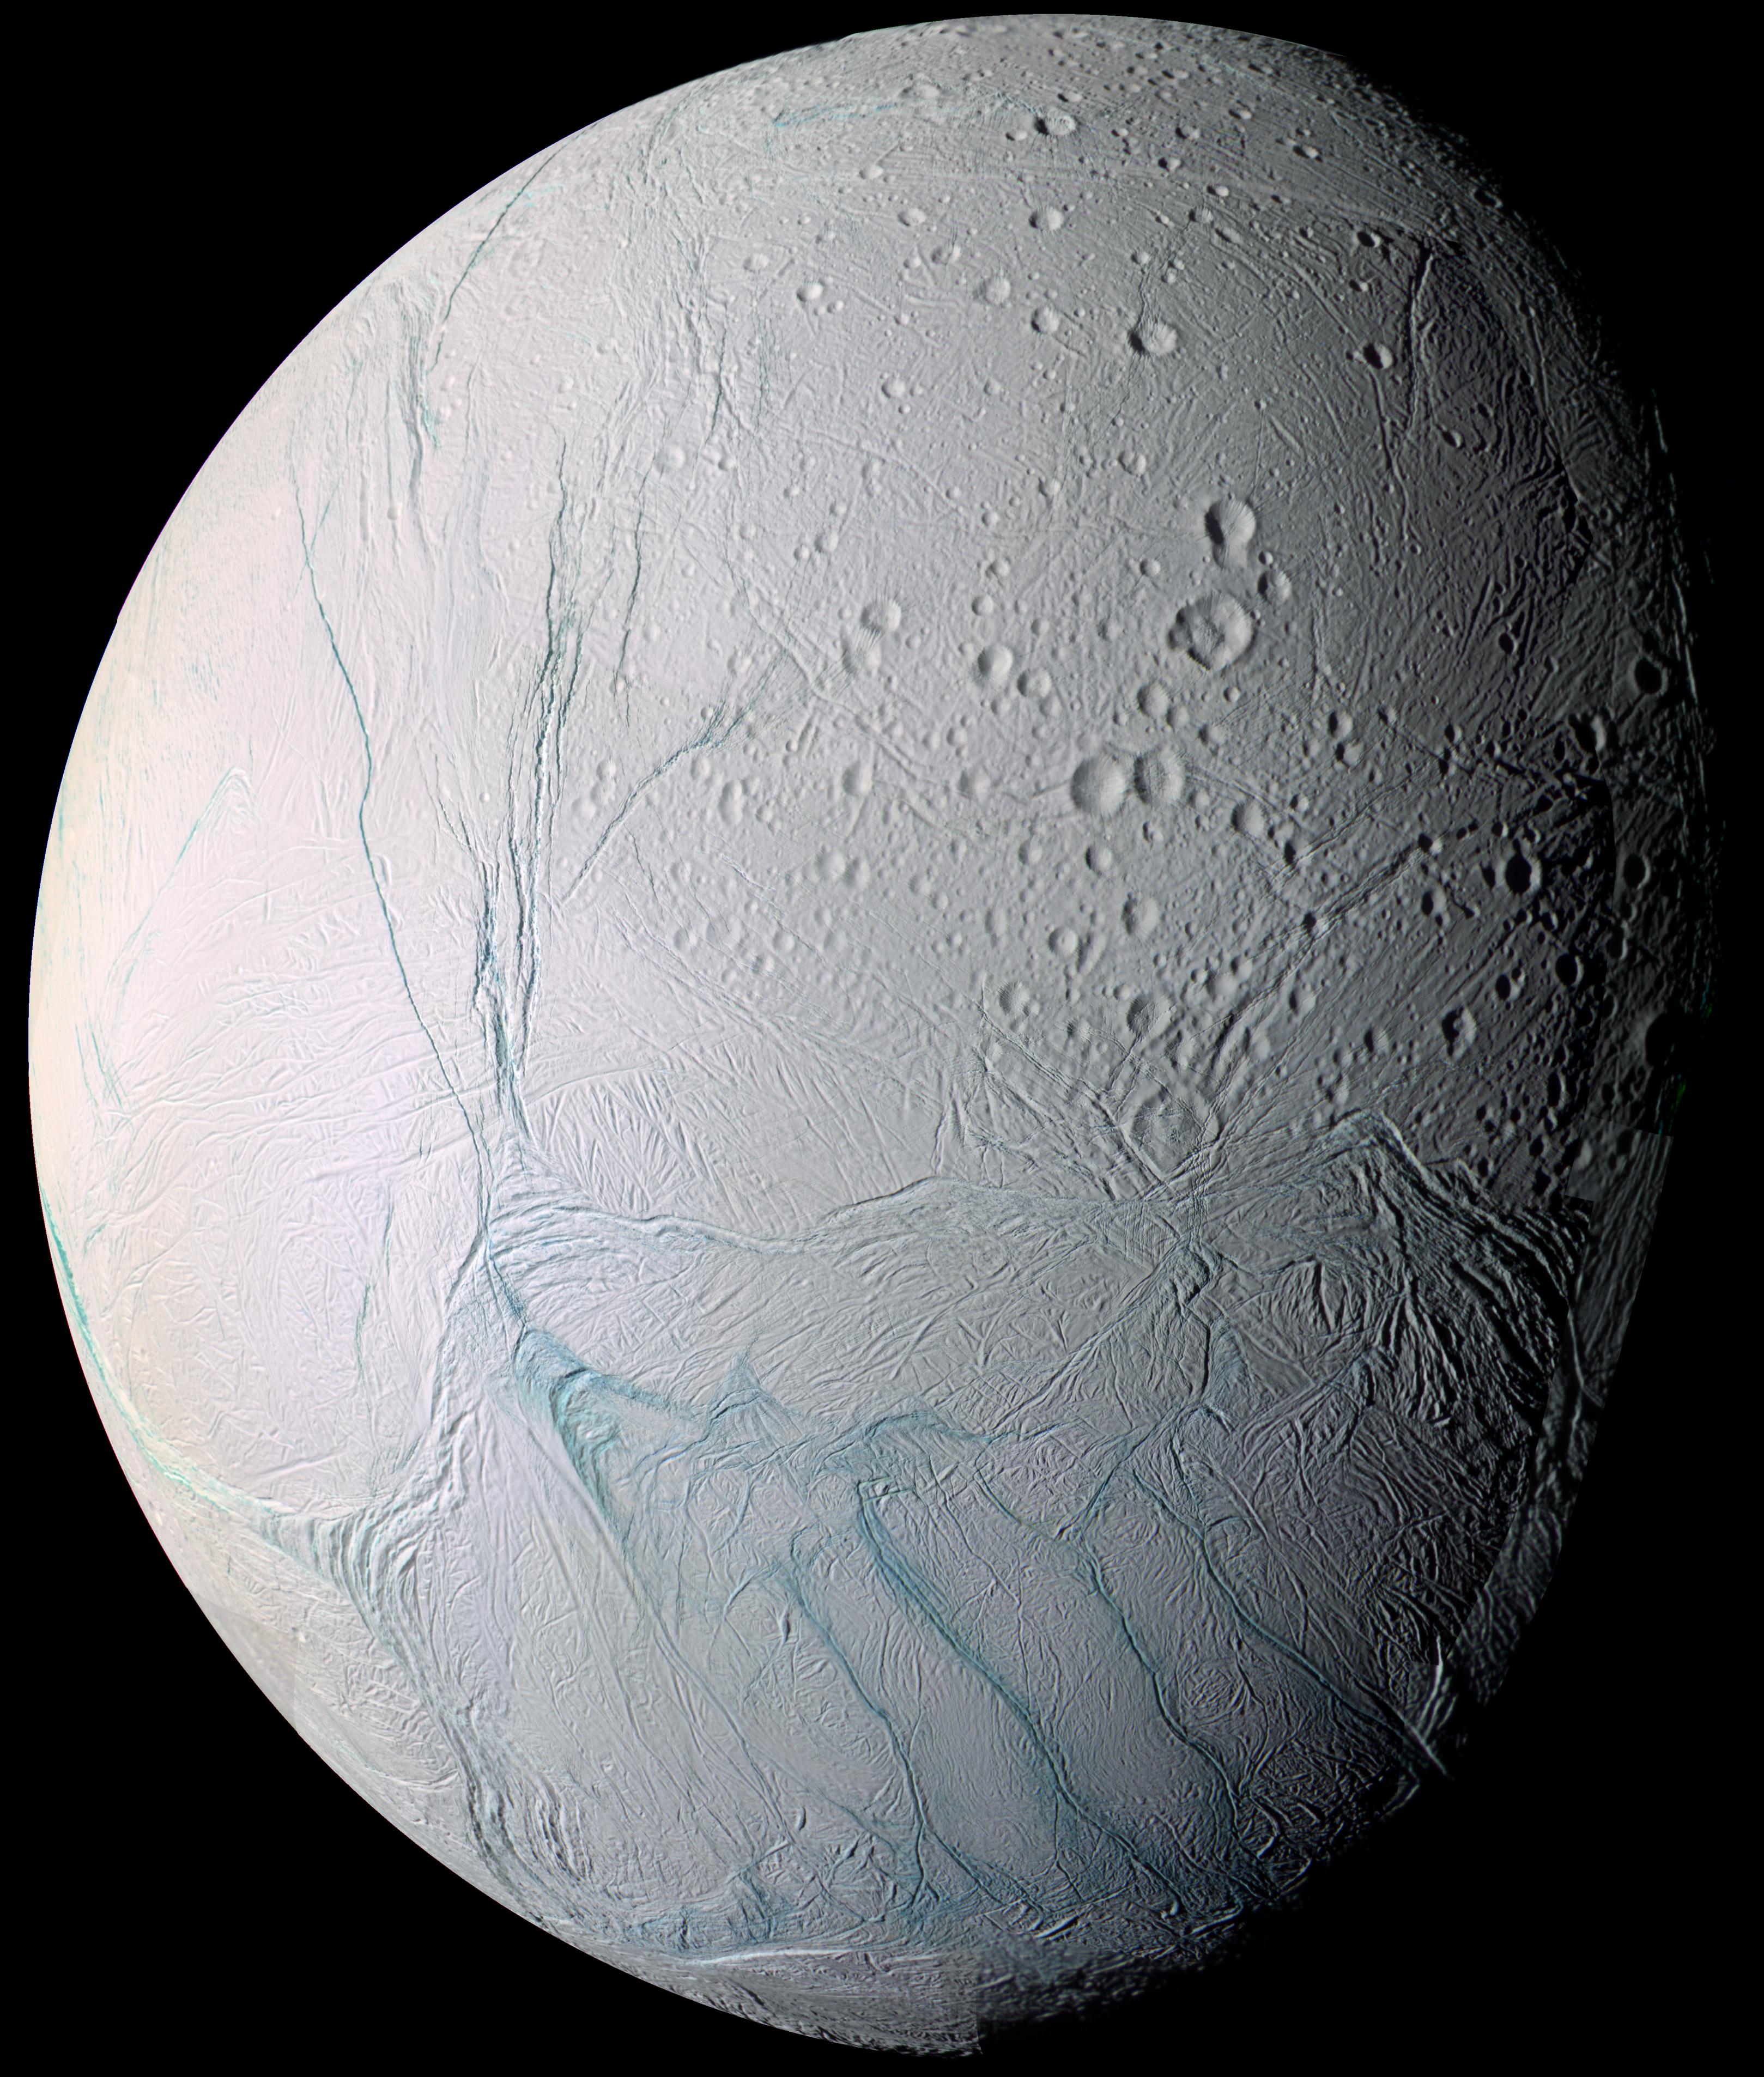 Энцелад — спутник планеты Сатурн, отличается высоким альбедо поверхности, которая в значительной степени лишена ударных кратеров и сформирована недавно. Энцелад отличается значительным активным криовулканизмом, предполагают, что под поверхностью спутника существуют океан жидкой воды и условия для возникновения и существования жизни. Вулканы спутника выбрасывают вещество со скоростью больше скорости убегания, что приводит к активному обмену спутника веществом с кольцом E Сатурна.